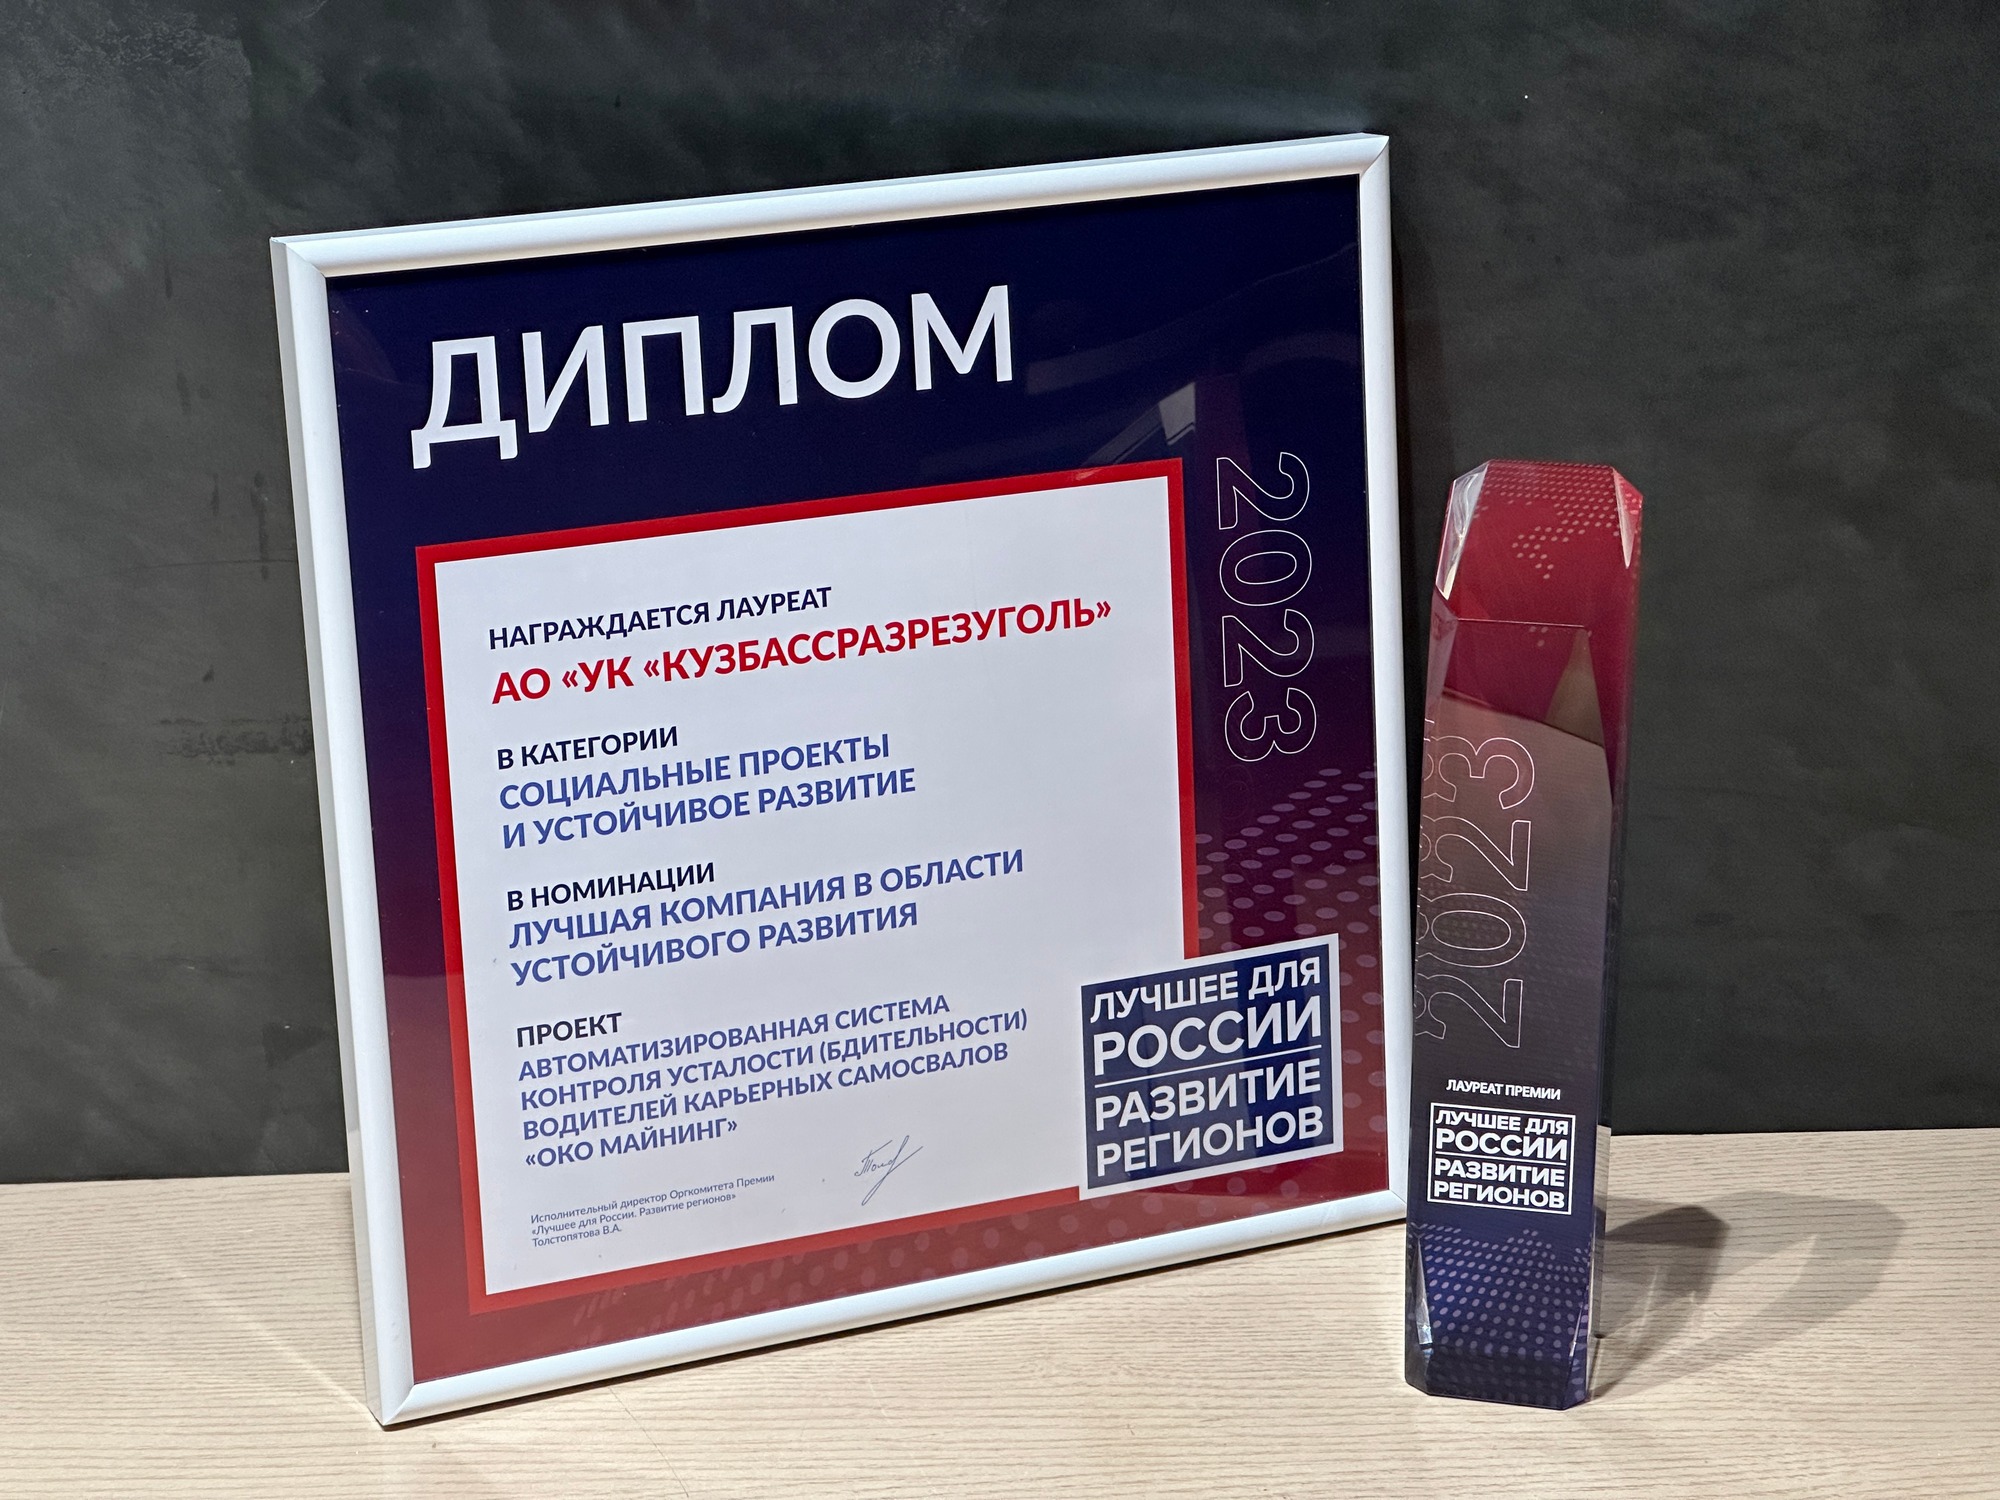 УК «Кузбассразрезуголь» получила Премию «Лучшее для России. Развитие Регионов» за цифровой проект в области охраны труда